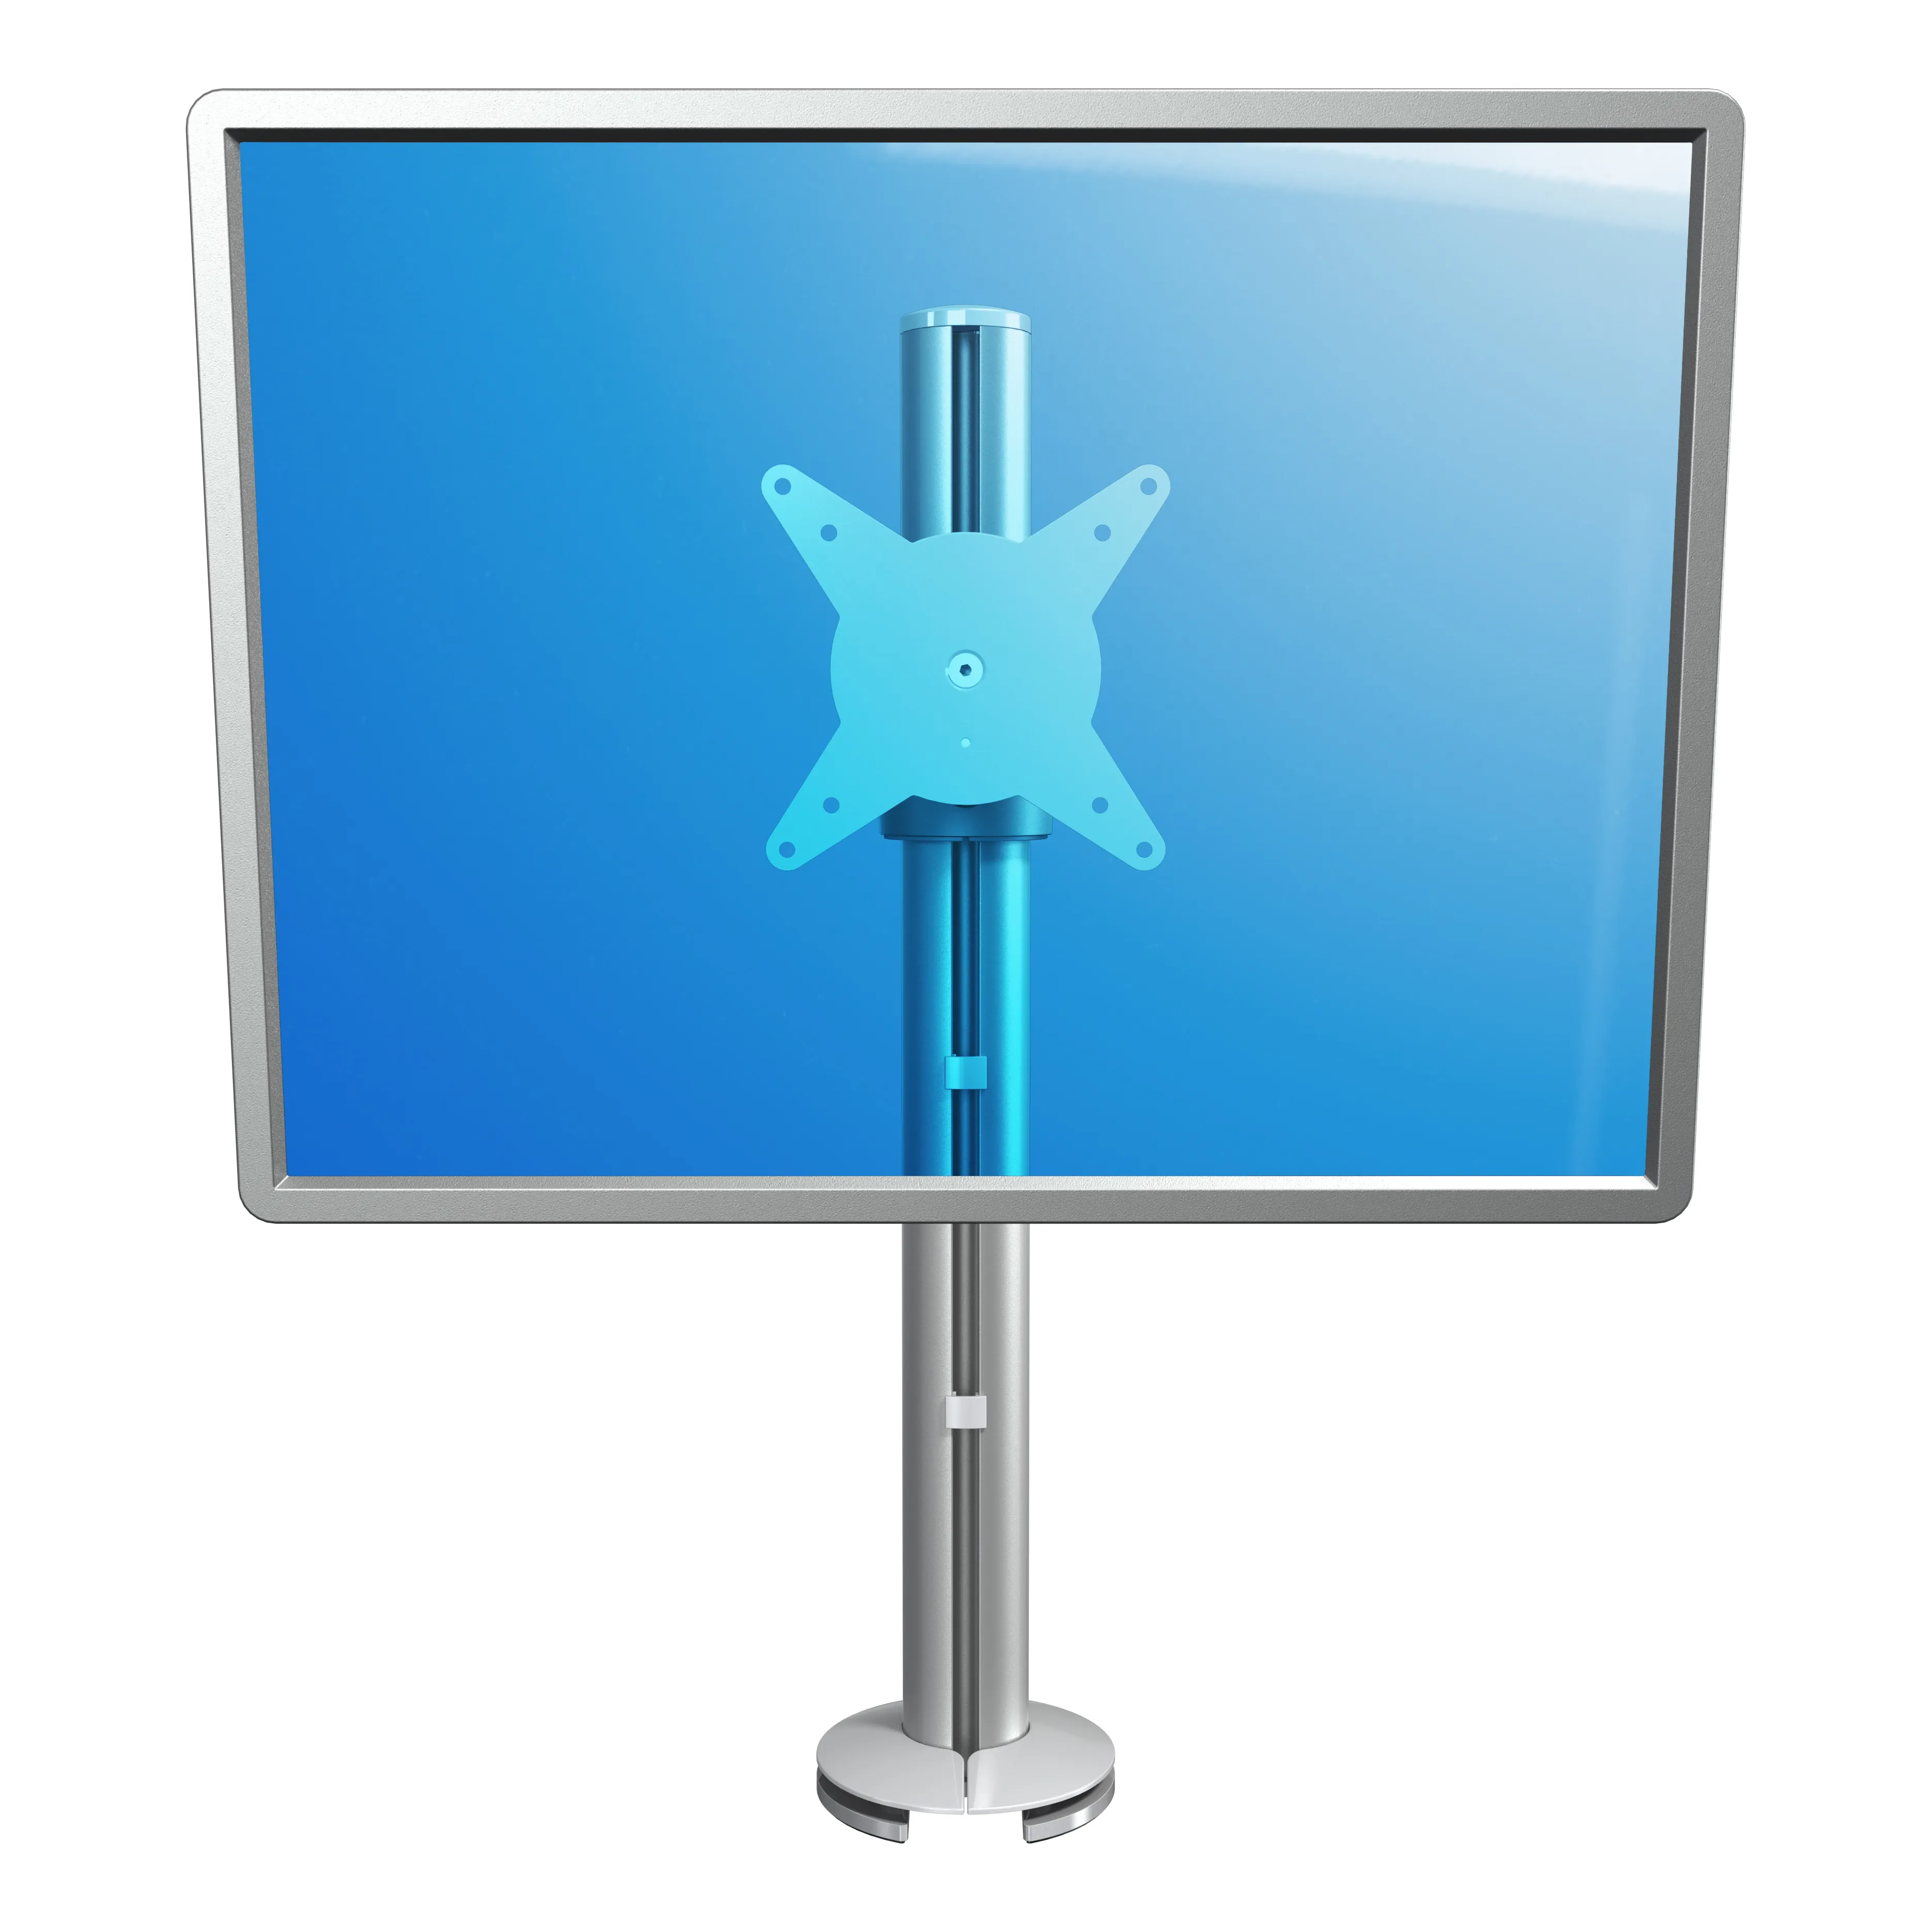 Vente Dataflex Viewlite bras support écran - bureau 102 Dataflex au meilleur prix - visuel 4